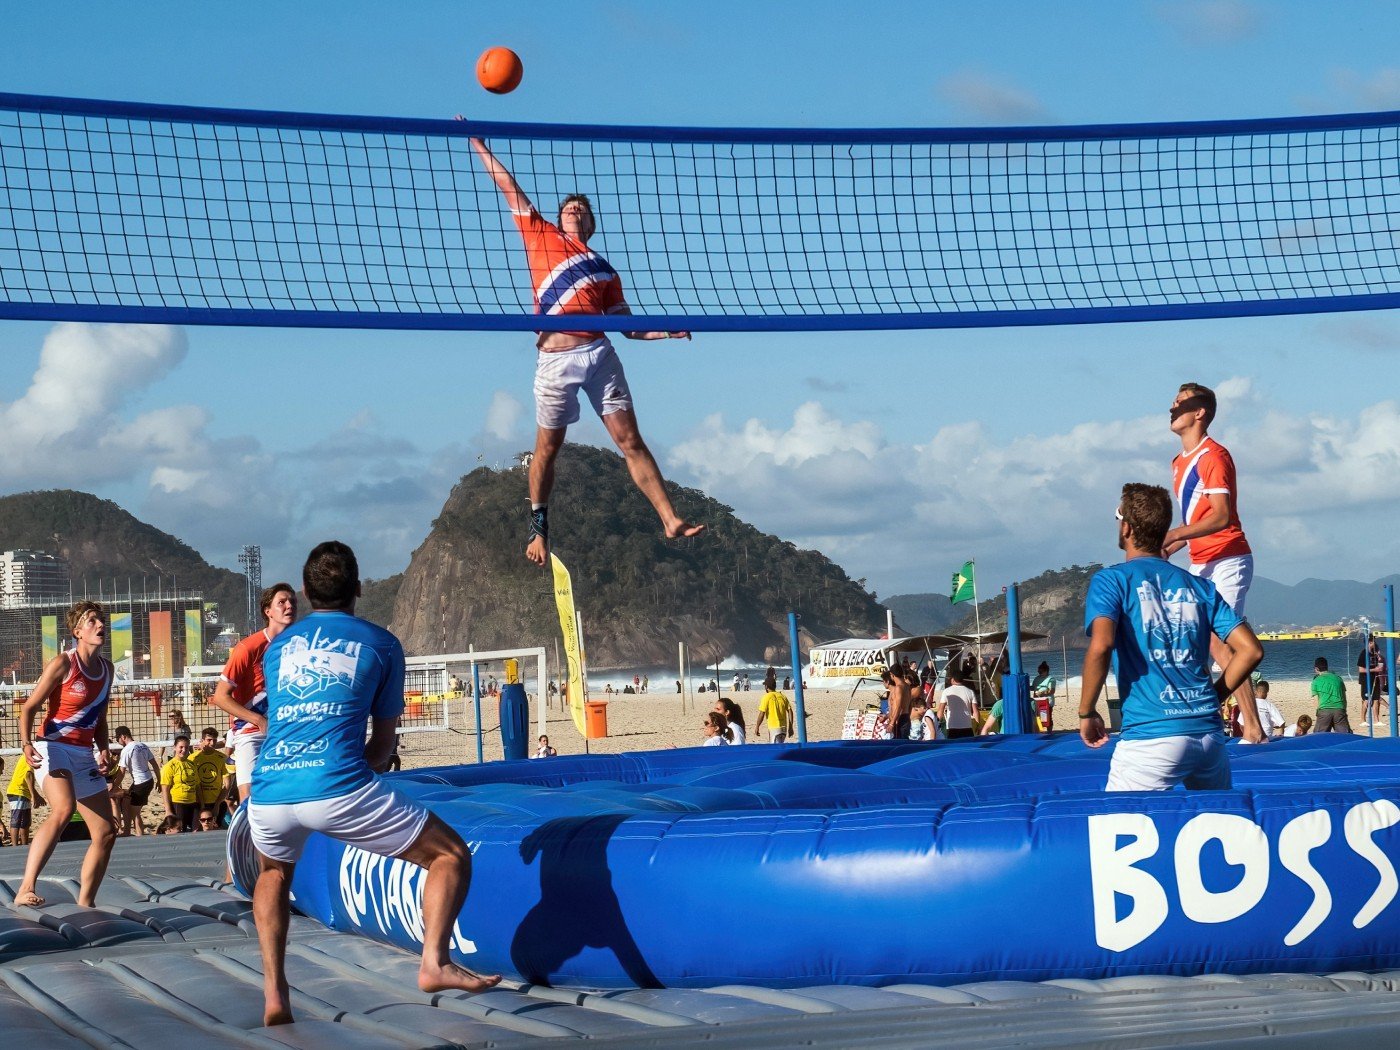 Jogadores sobre um trampolim inflável divido por uma rede, na praia, pulam e tentam jogar a bola na área do time adversário, que está preparado para defender.